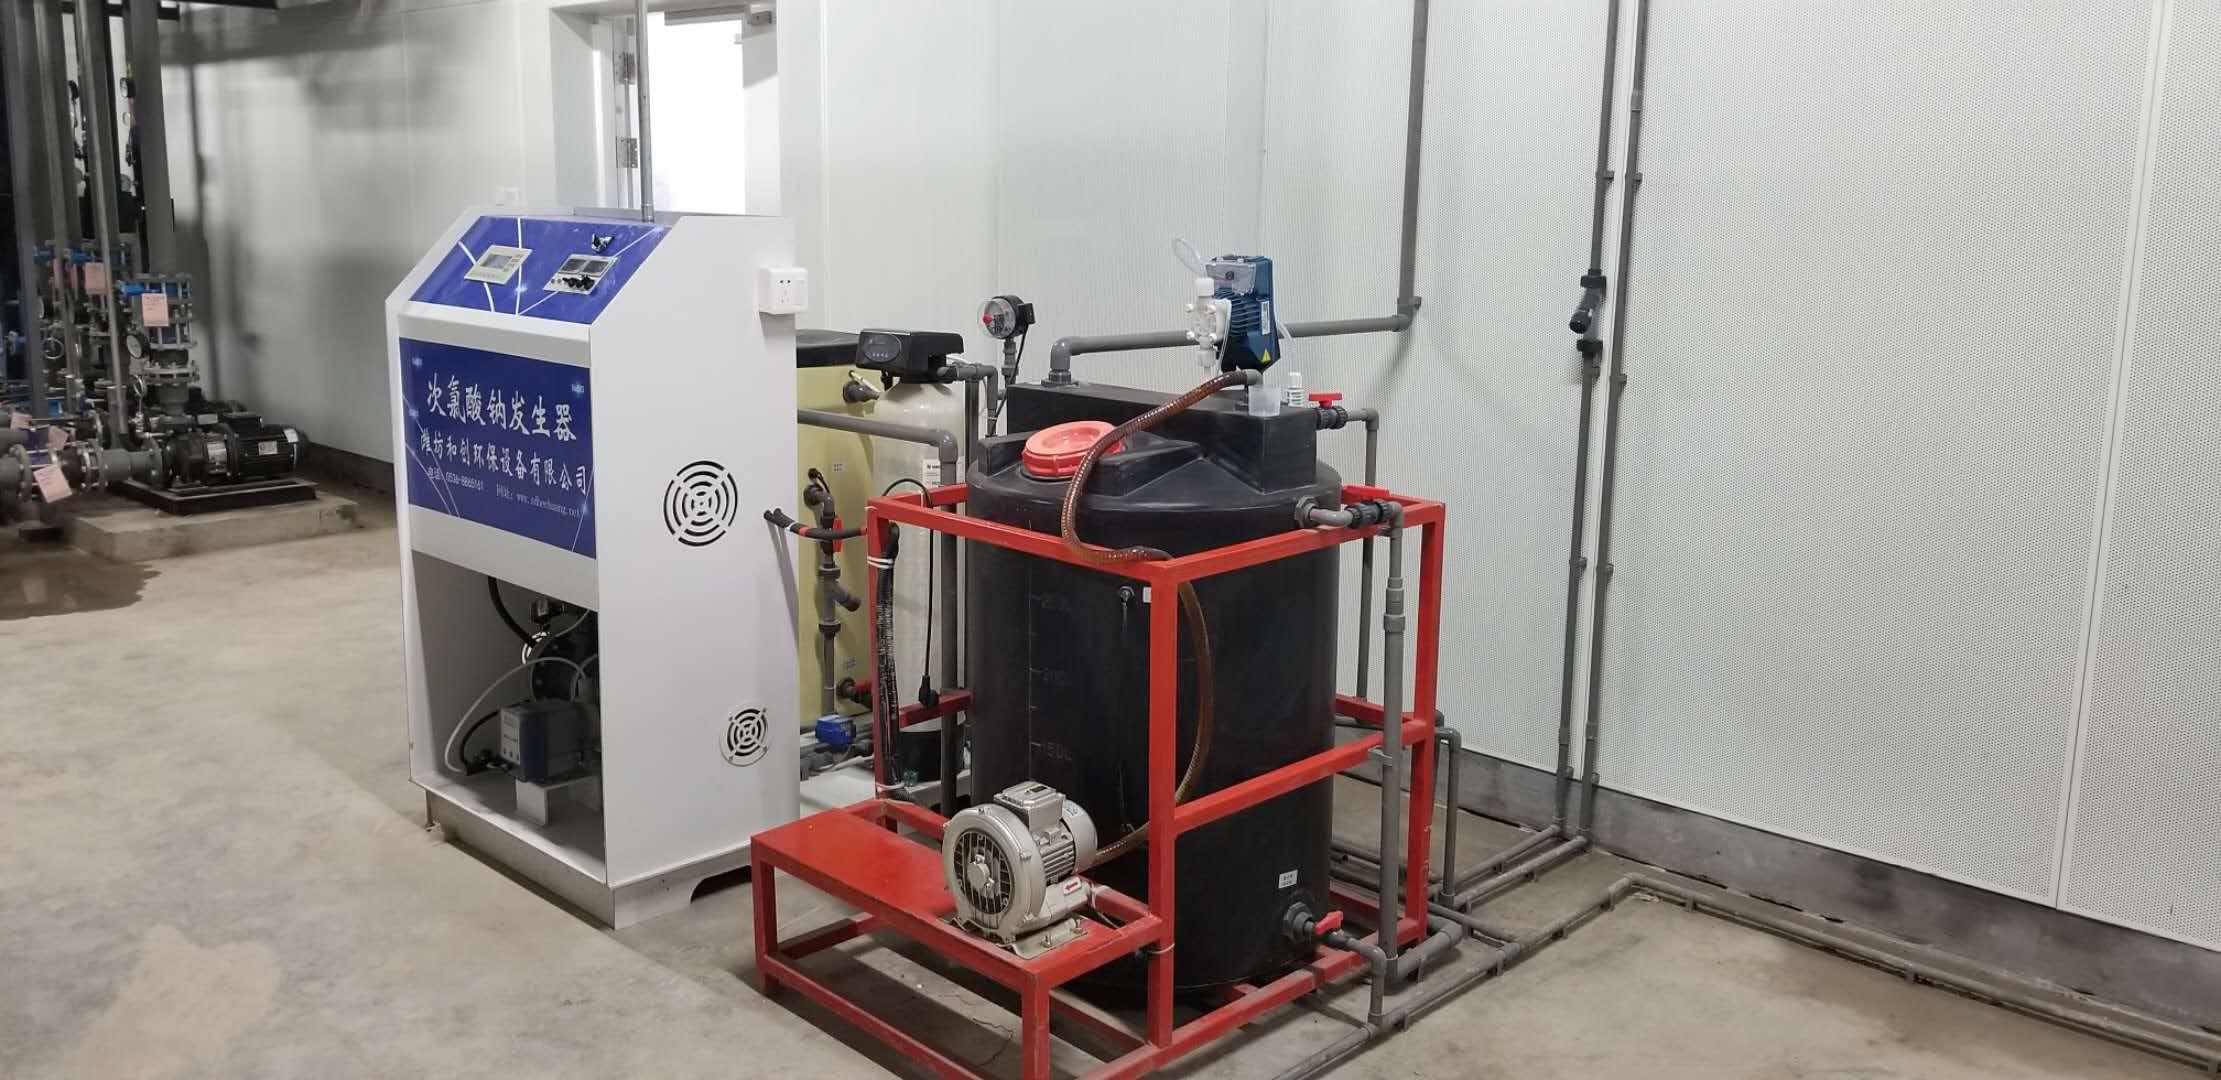 污水处理设备材质/次氯酸钠发生器安装条件